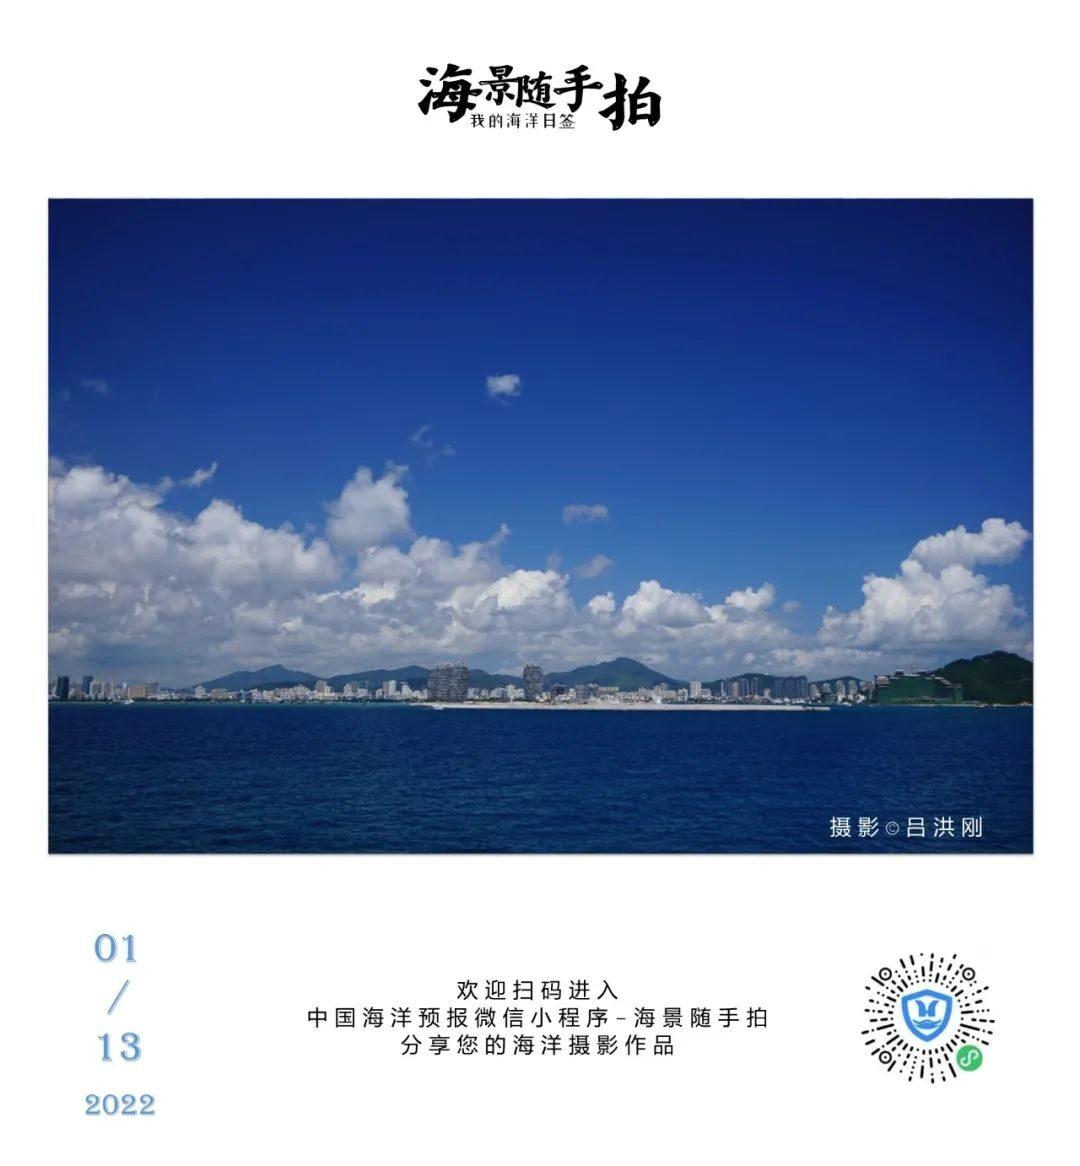 渤海湾阵风锋垂直结构特征及维持机制分析